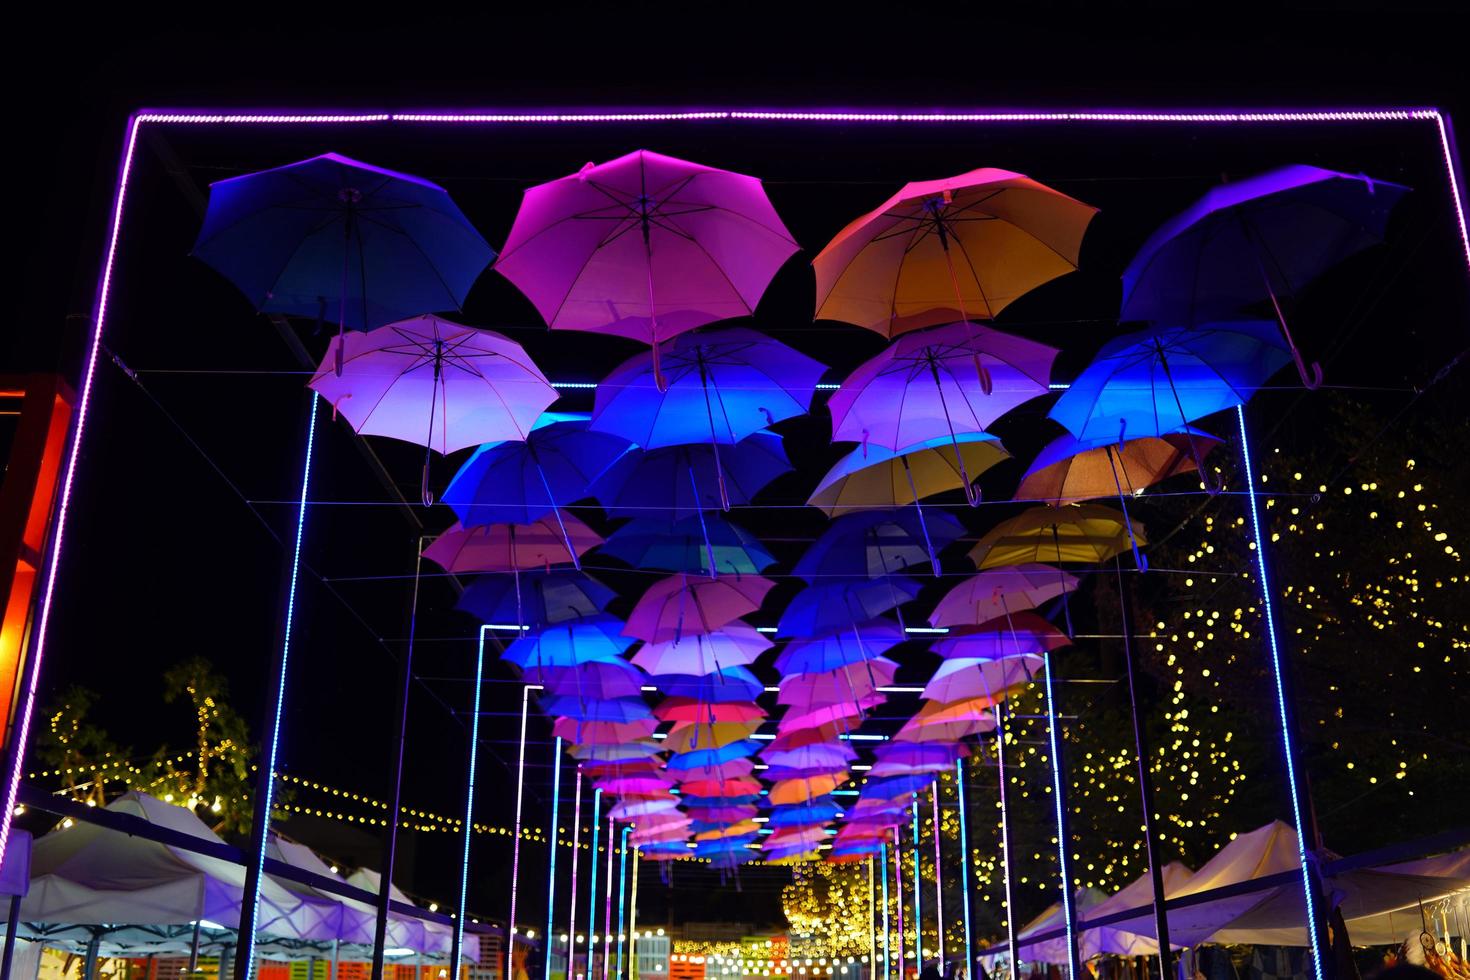 el colorido paraguas en evento nocturno al aire libre en el parque foto